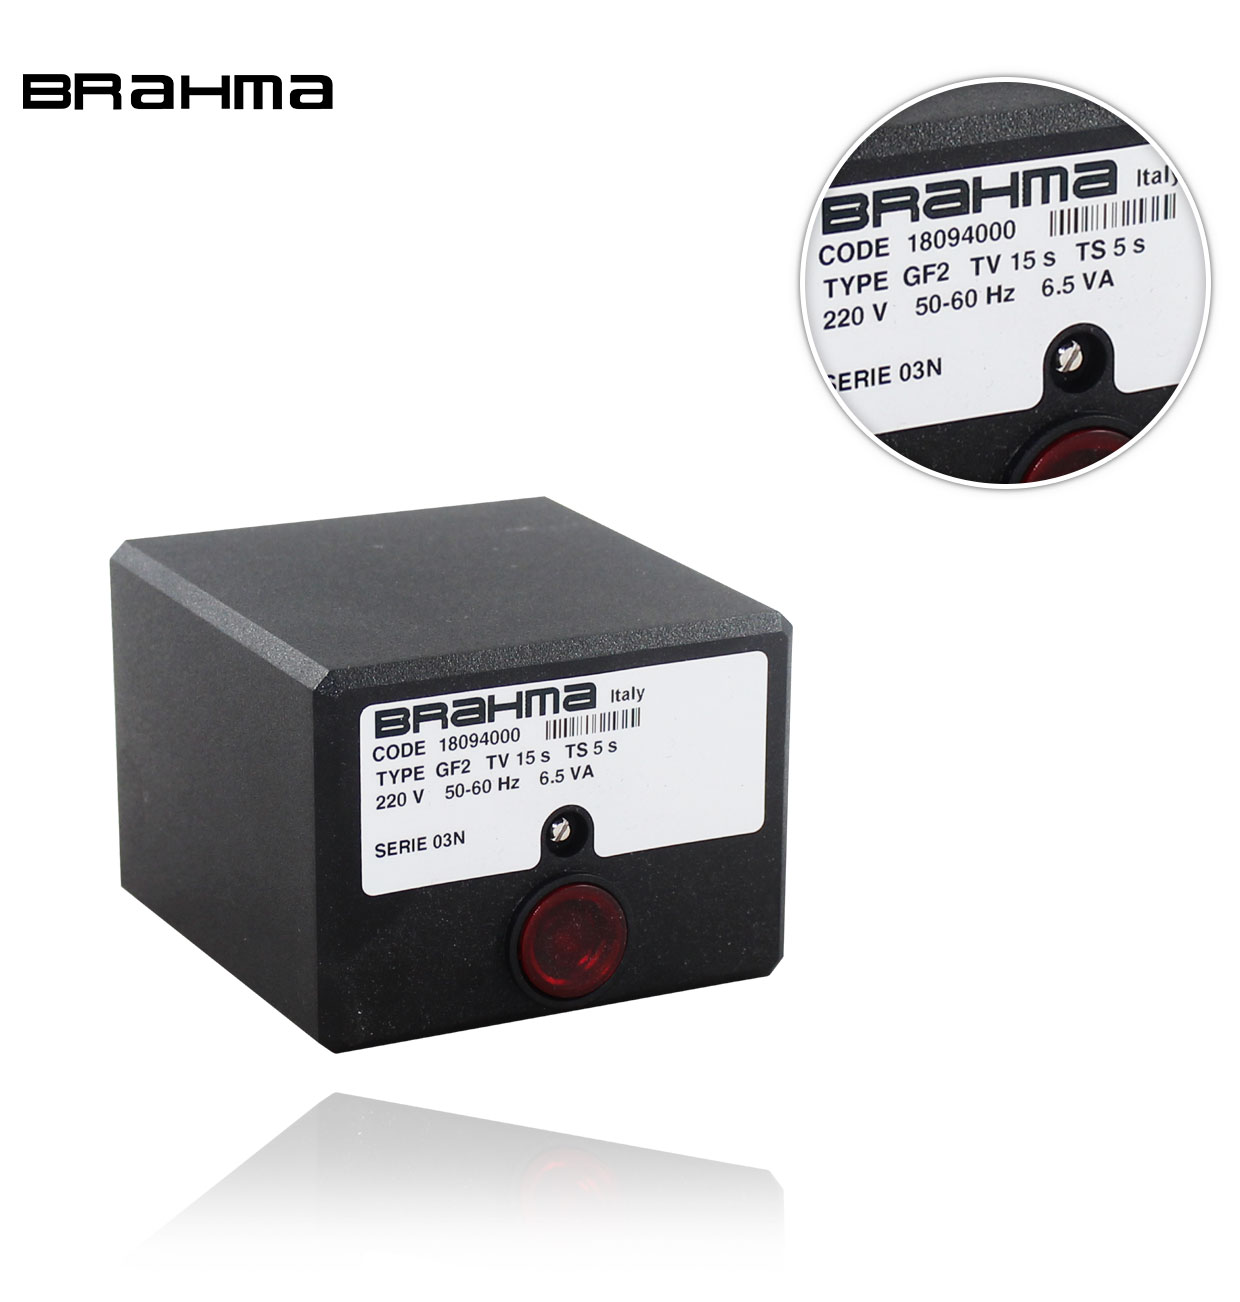 GF2 S03N TW15 TS5 220V/50-60Hz     BRAHMA CONTROL BOX